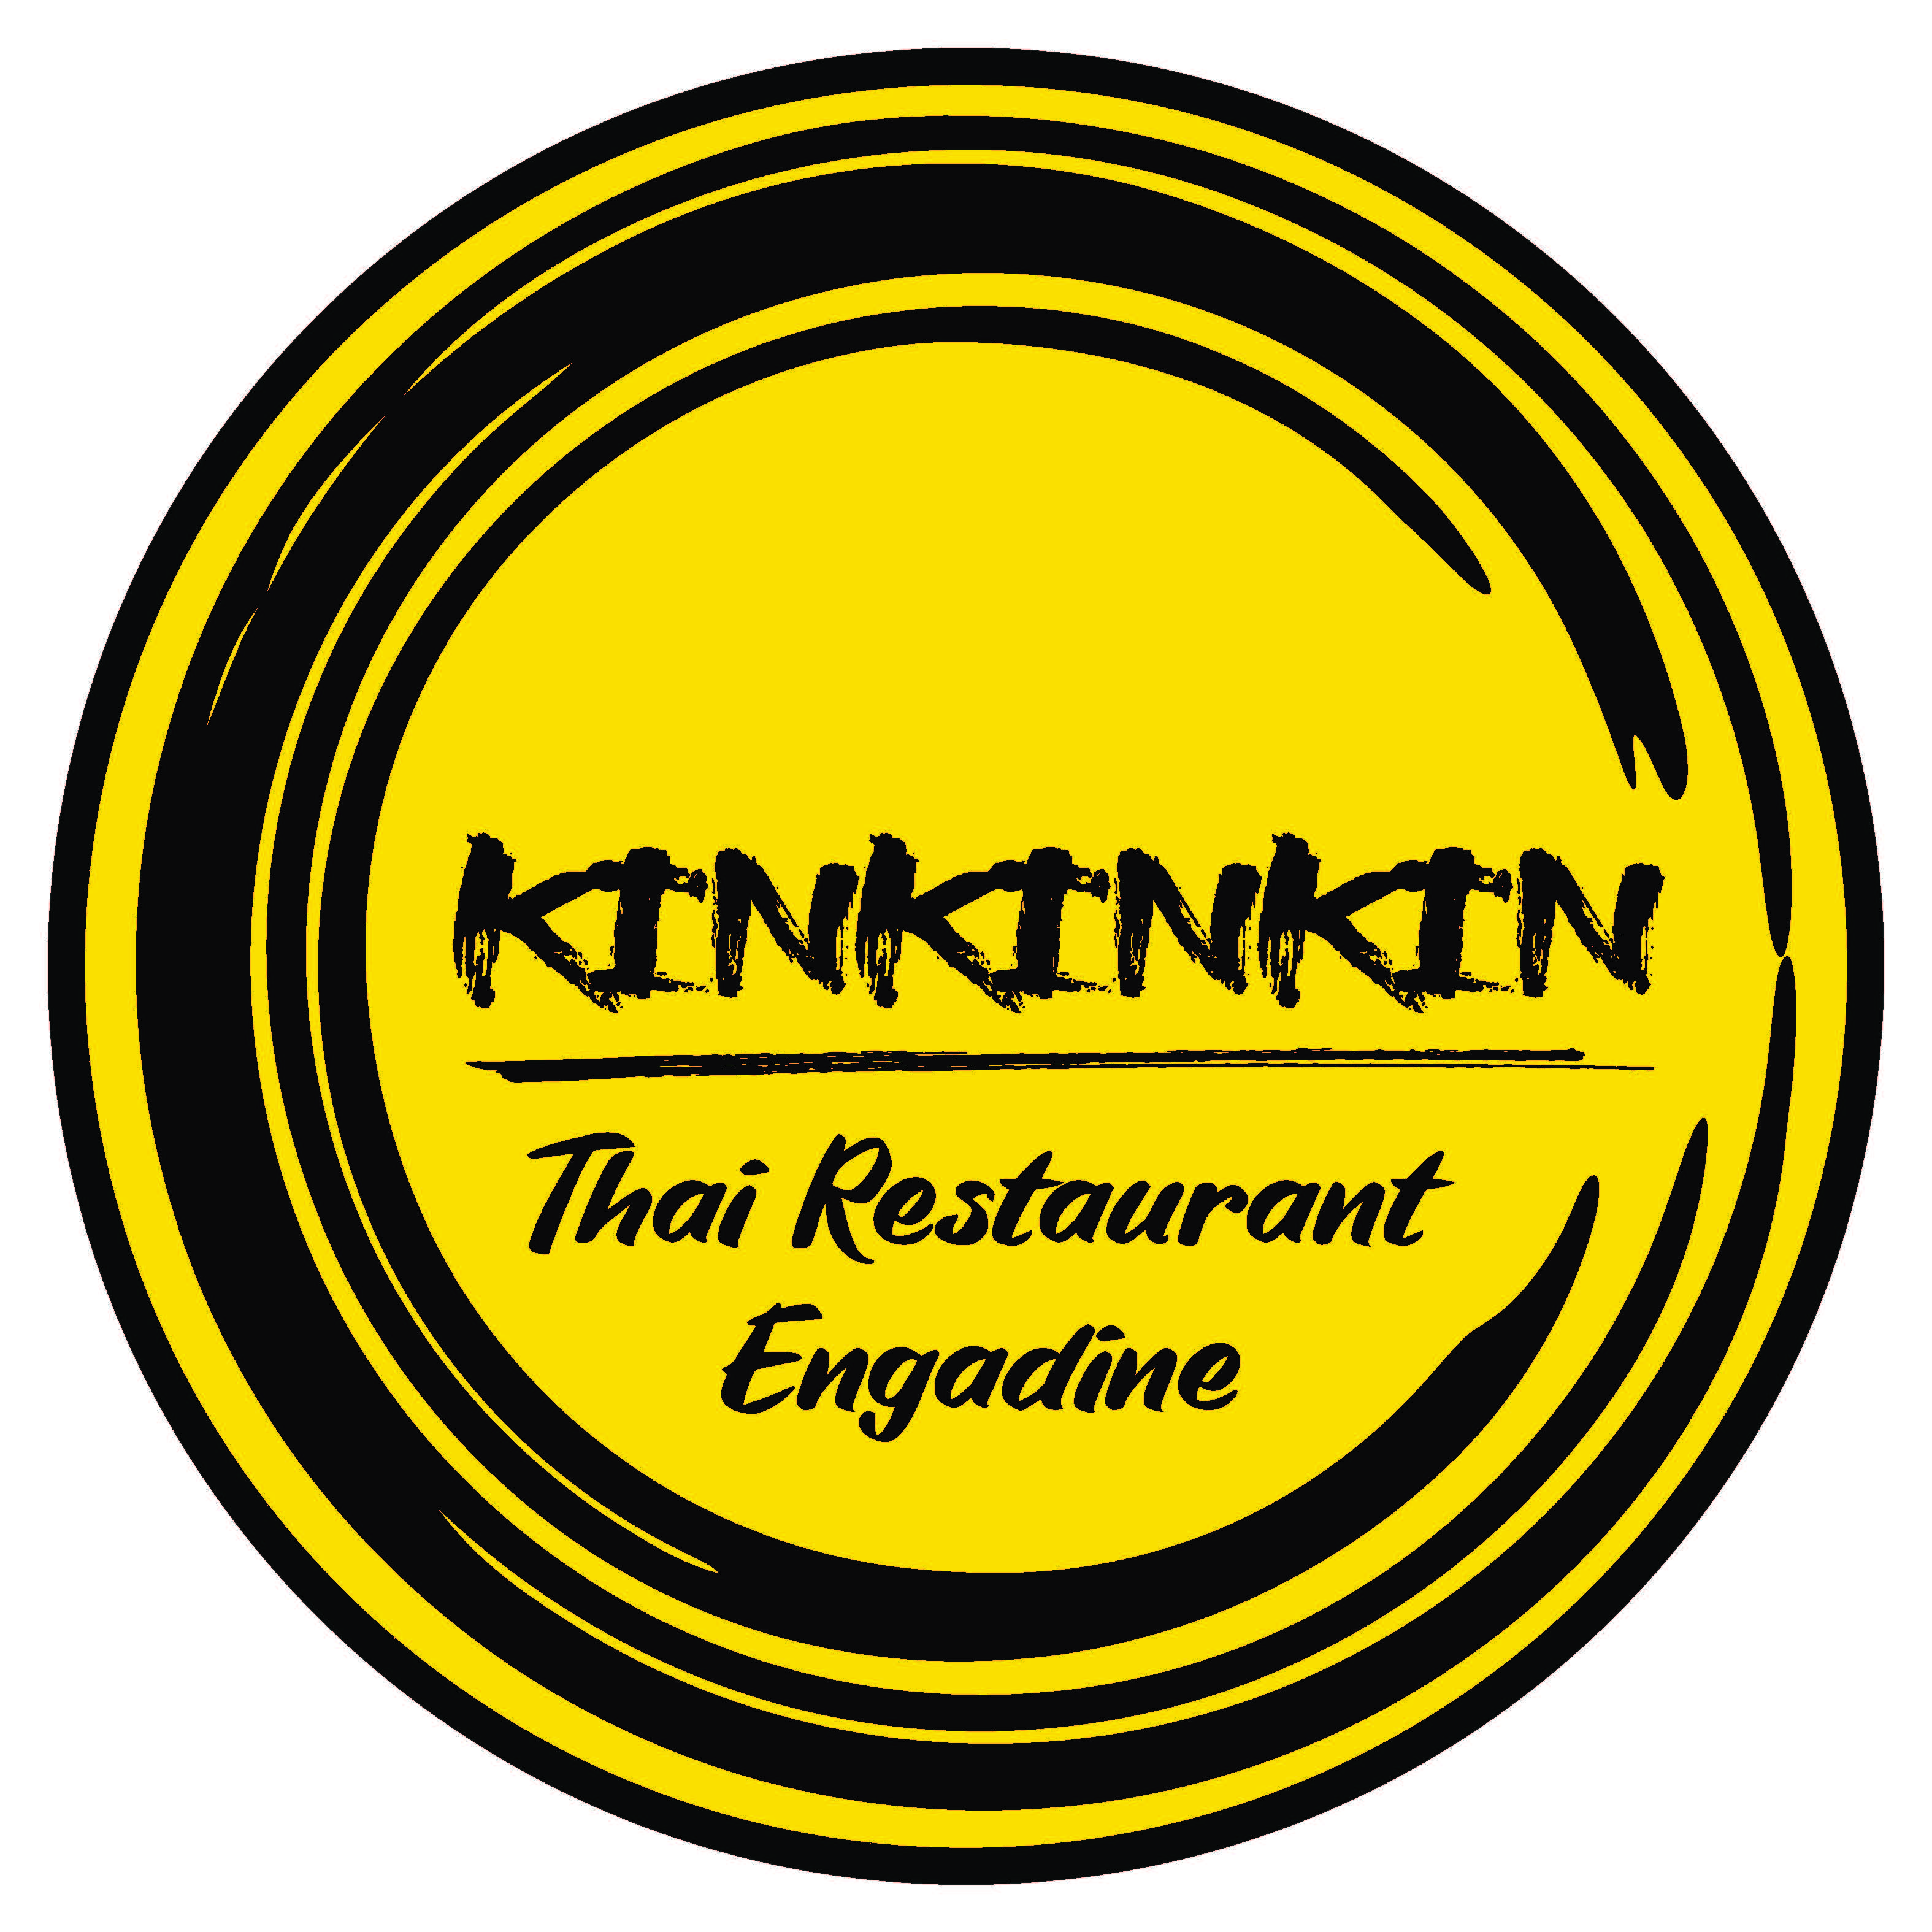 Kin Kin Kin Thai